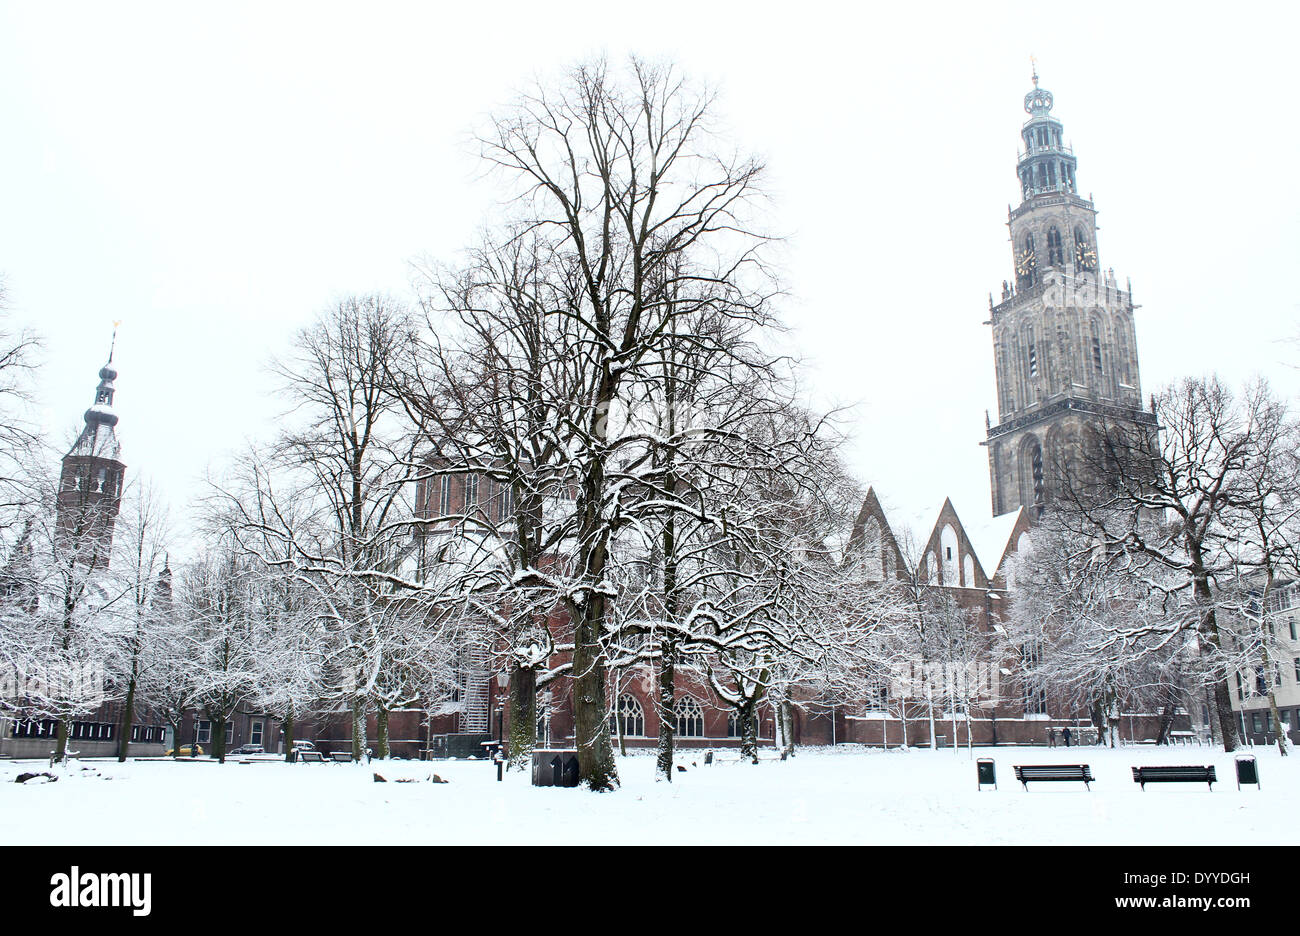 Winterliche Martinikerhof mit Martinitoren Turm, einer der ältesten Plätze in der mittelalterlichen Stadt von Groningen, Niederlande. Stockfoto